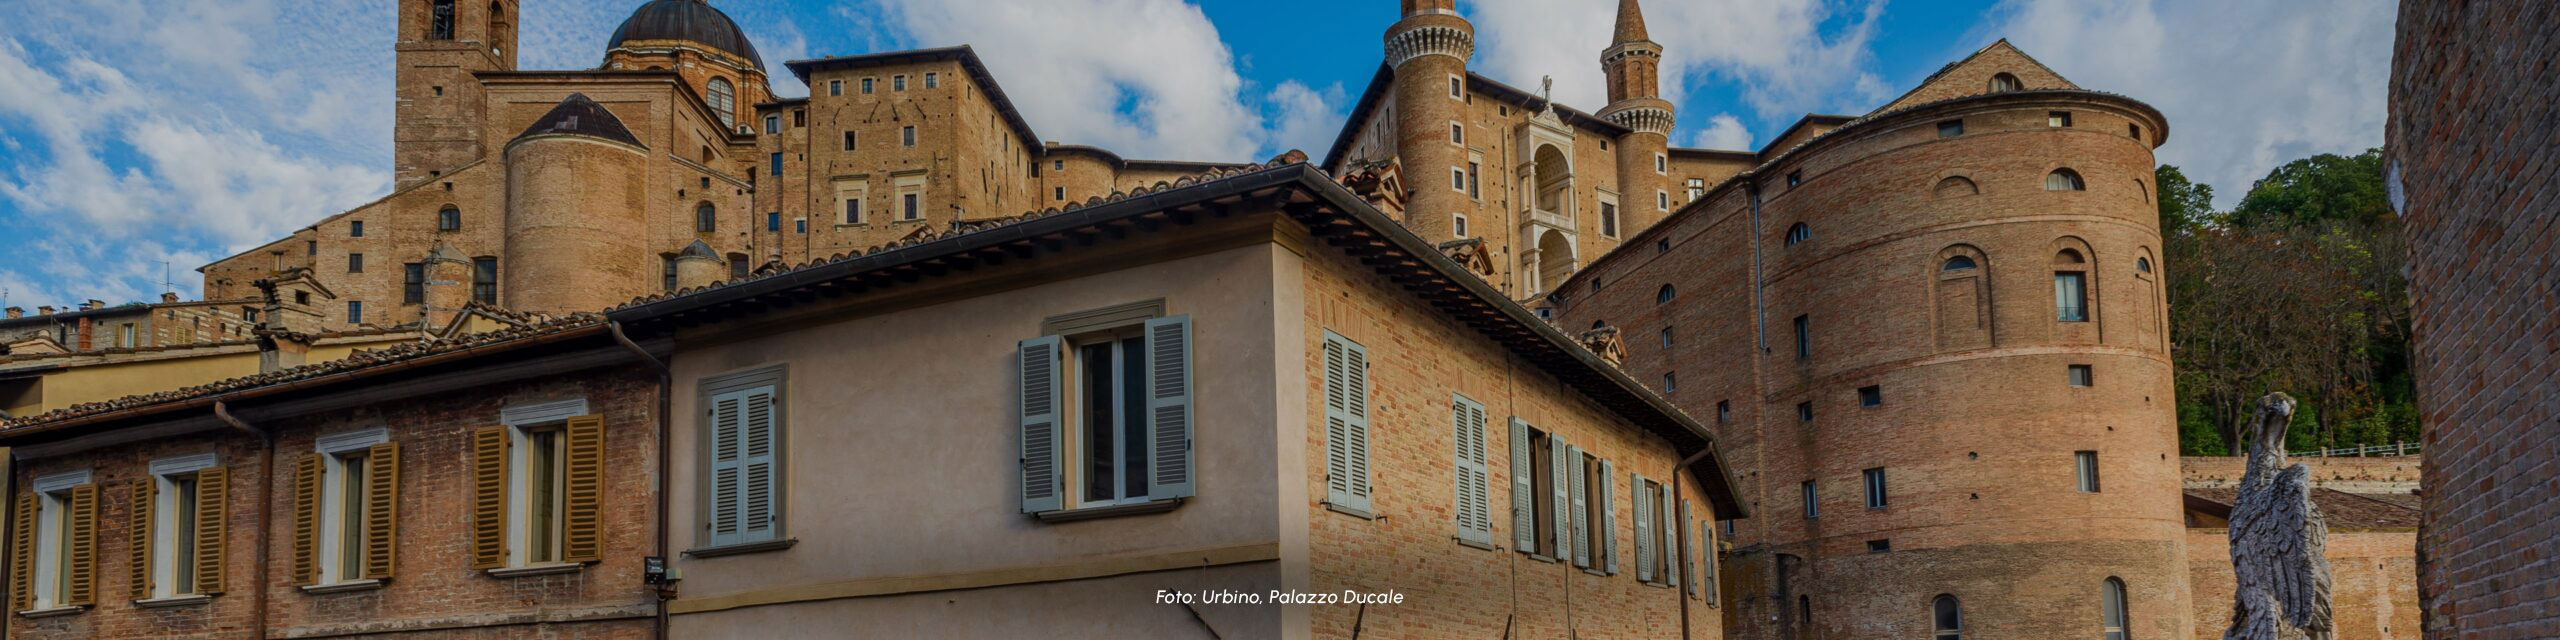 Copertina dell'itinerario Urbino. L'arte del Rinascimento. MARCHE-wide-scaled-1.jpg